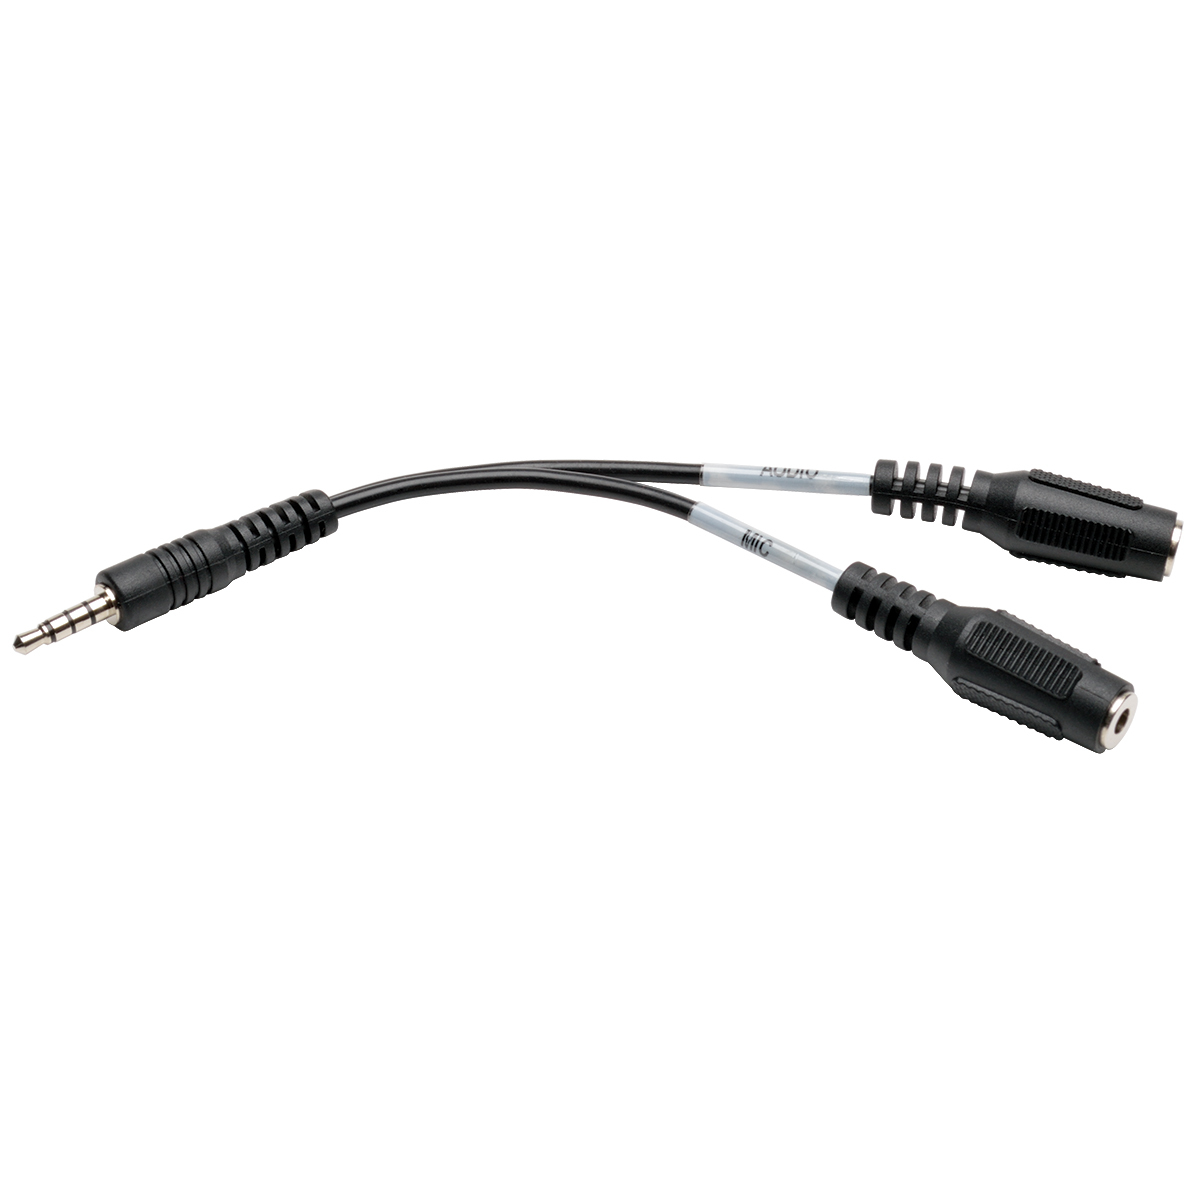 Cable Tripp Lite Divisor De 3.5Mm A 2X 3.5Mm Hembra 15Cm P318-06N-Mff